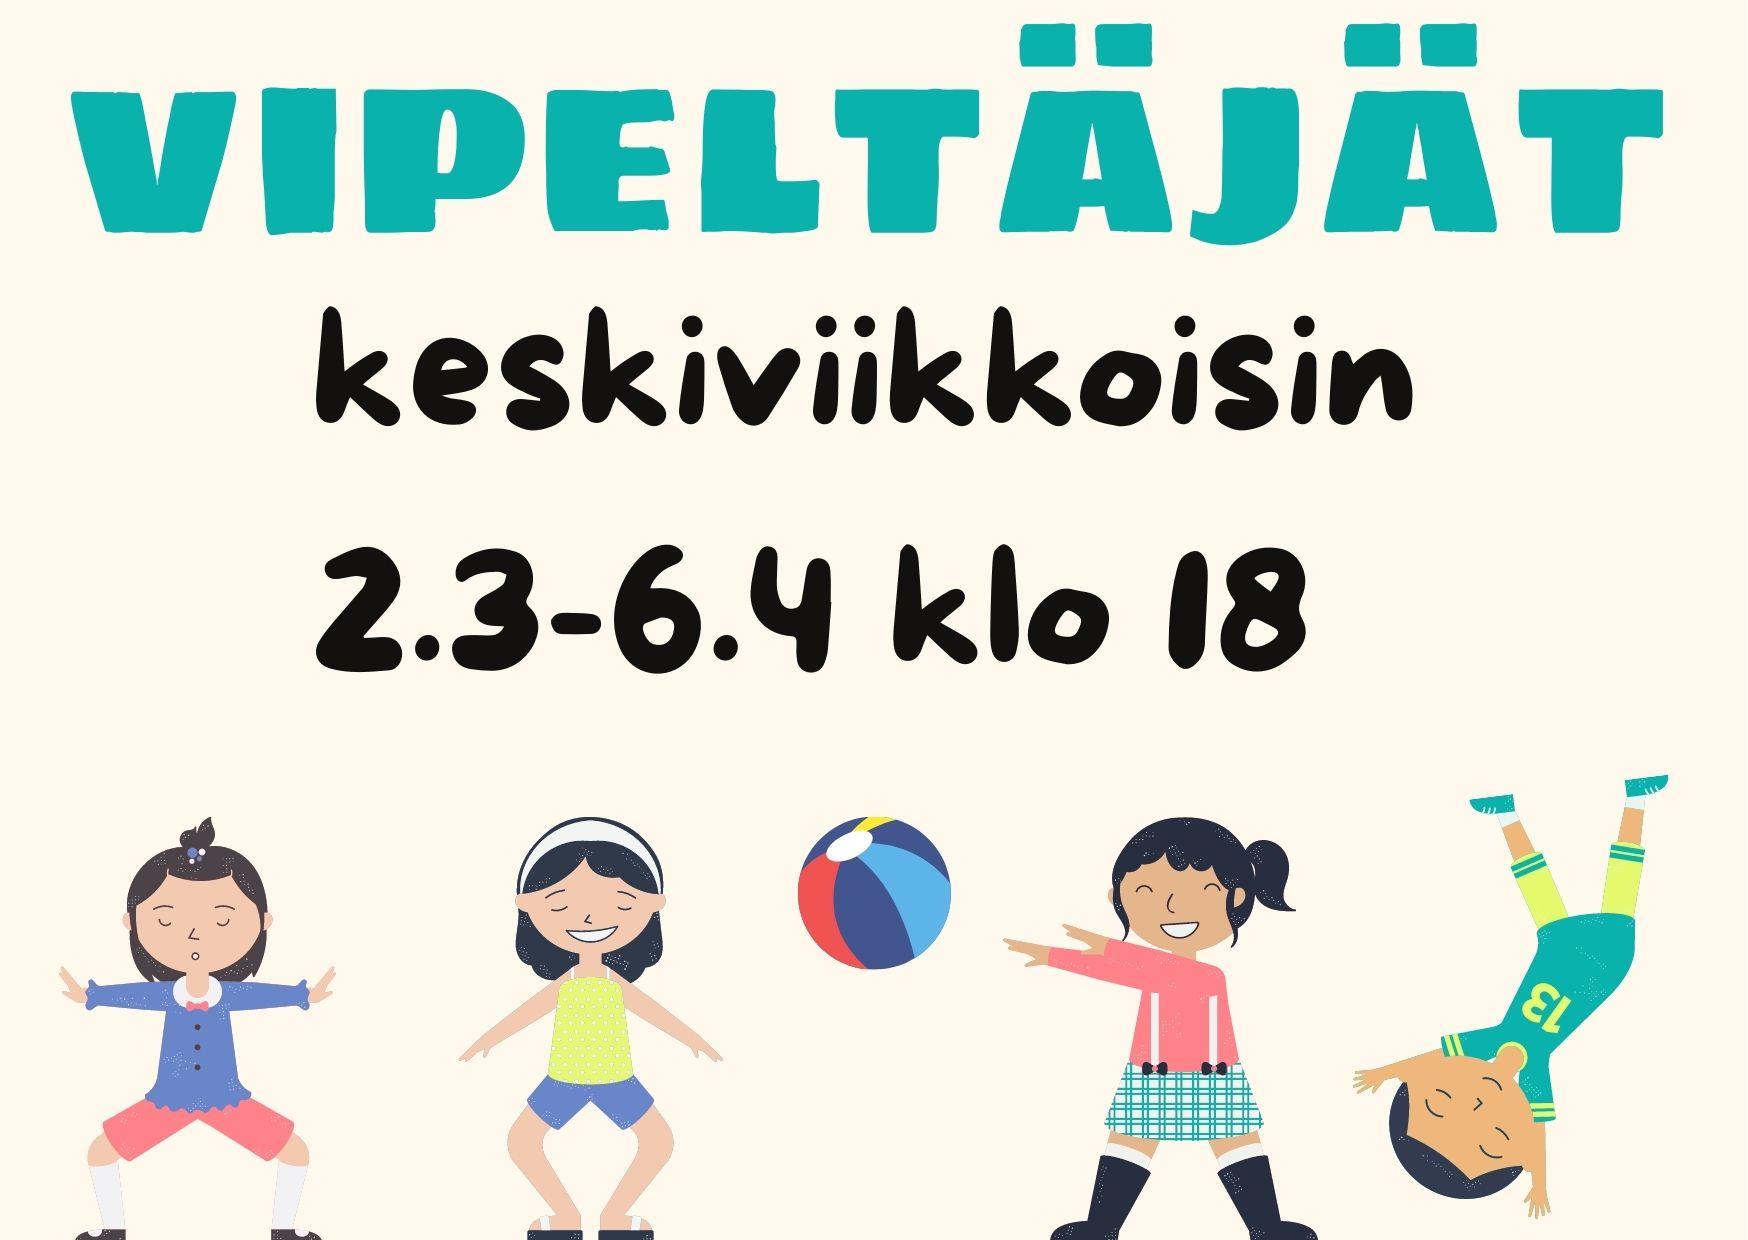 Kuvassa liikuntaleikkejä leikkiviä lapsia ja yllä teksti Vipeltäjät keskiviikkoisin 2.3.-6.4. klo 18